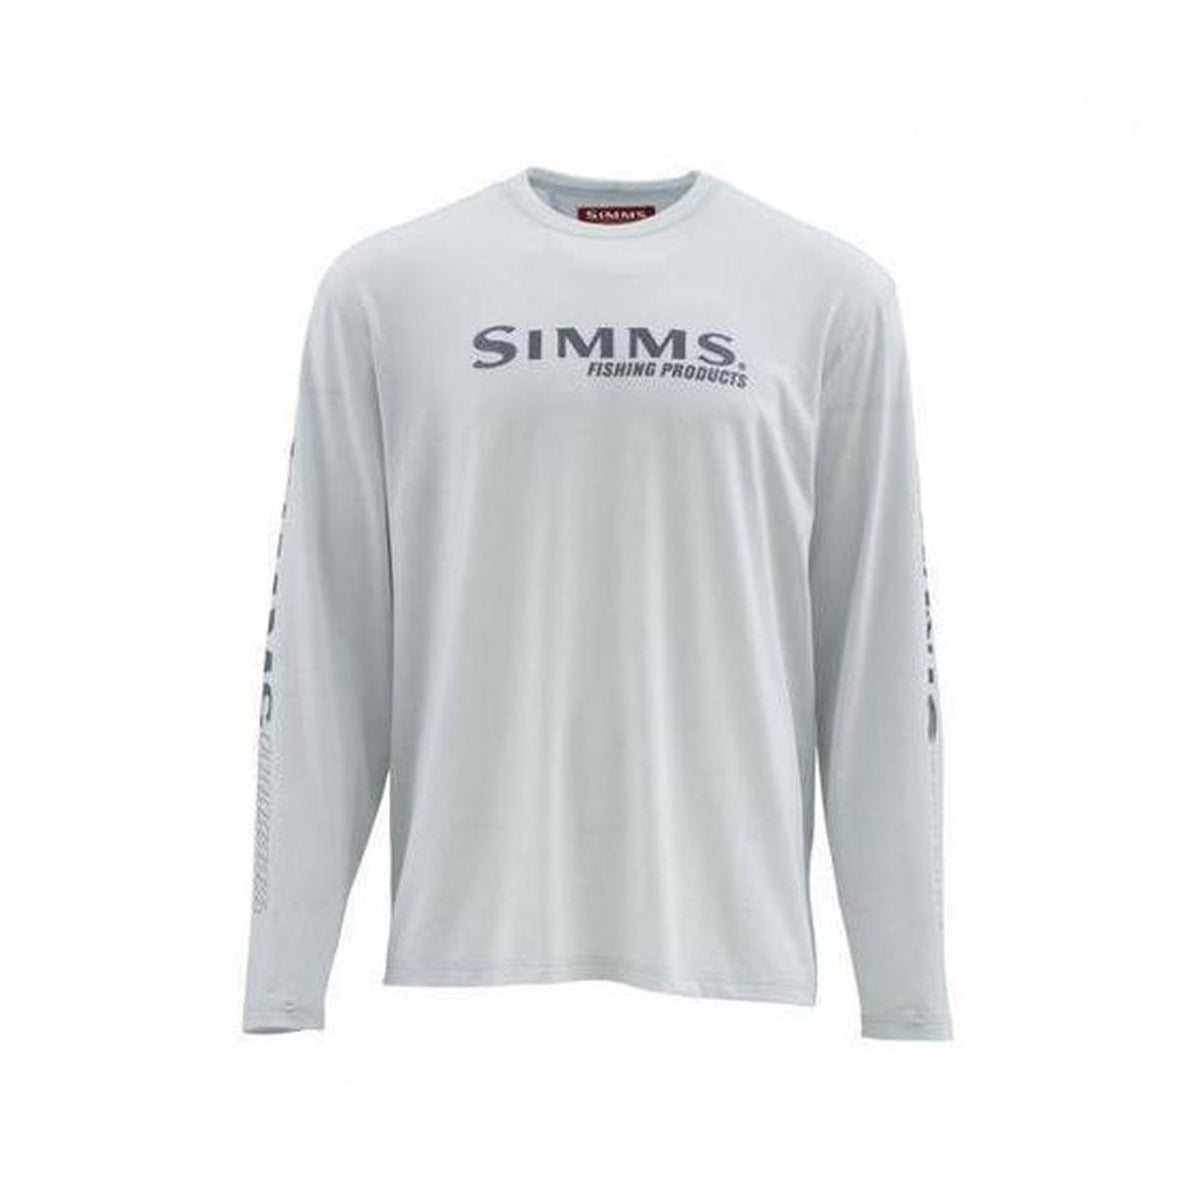 Simms Tech Tee Long Sleeve Shirt